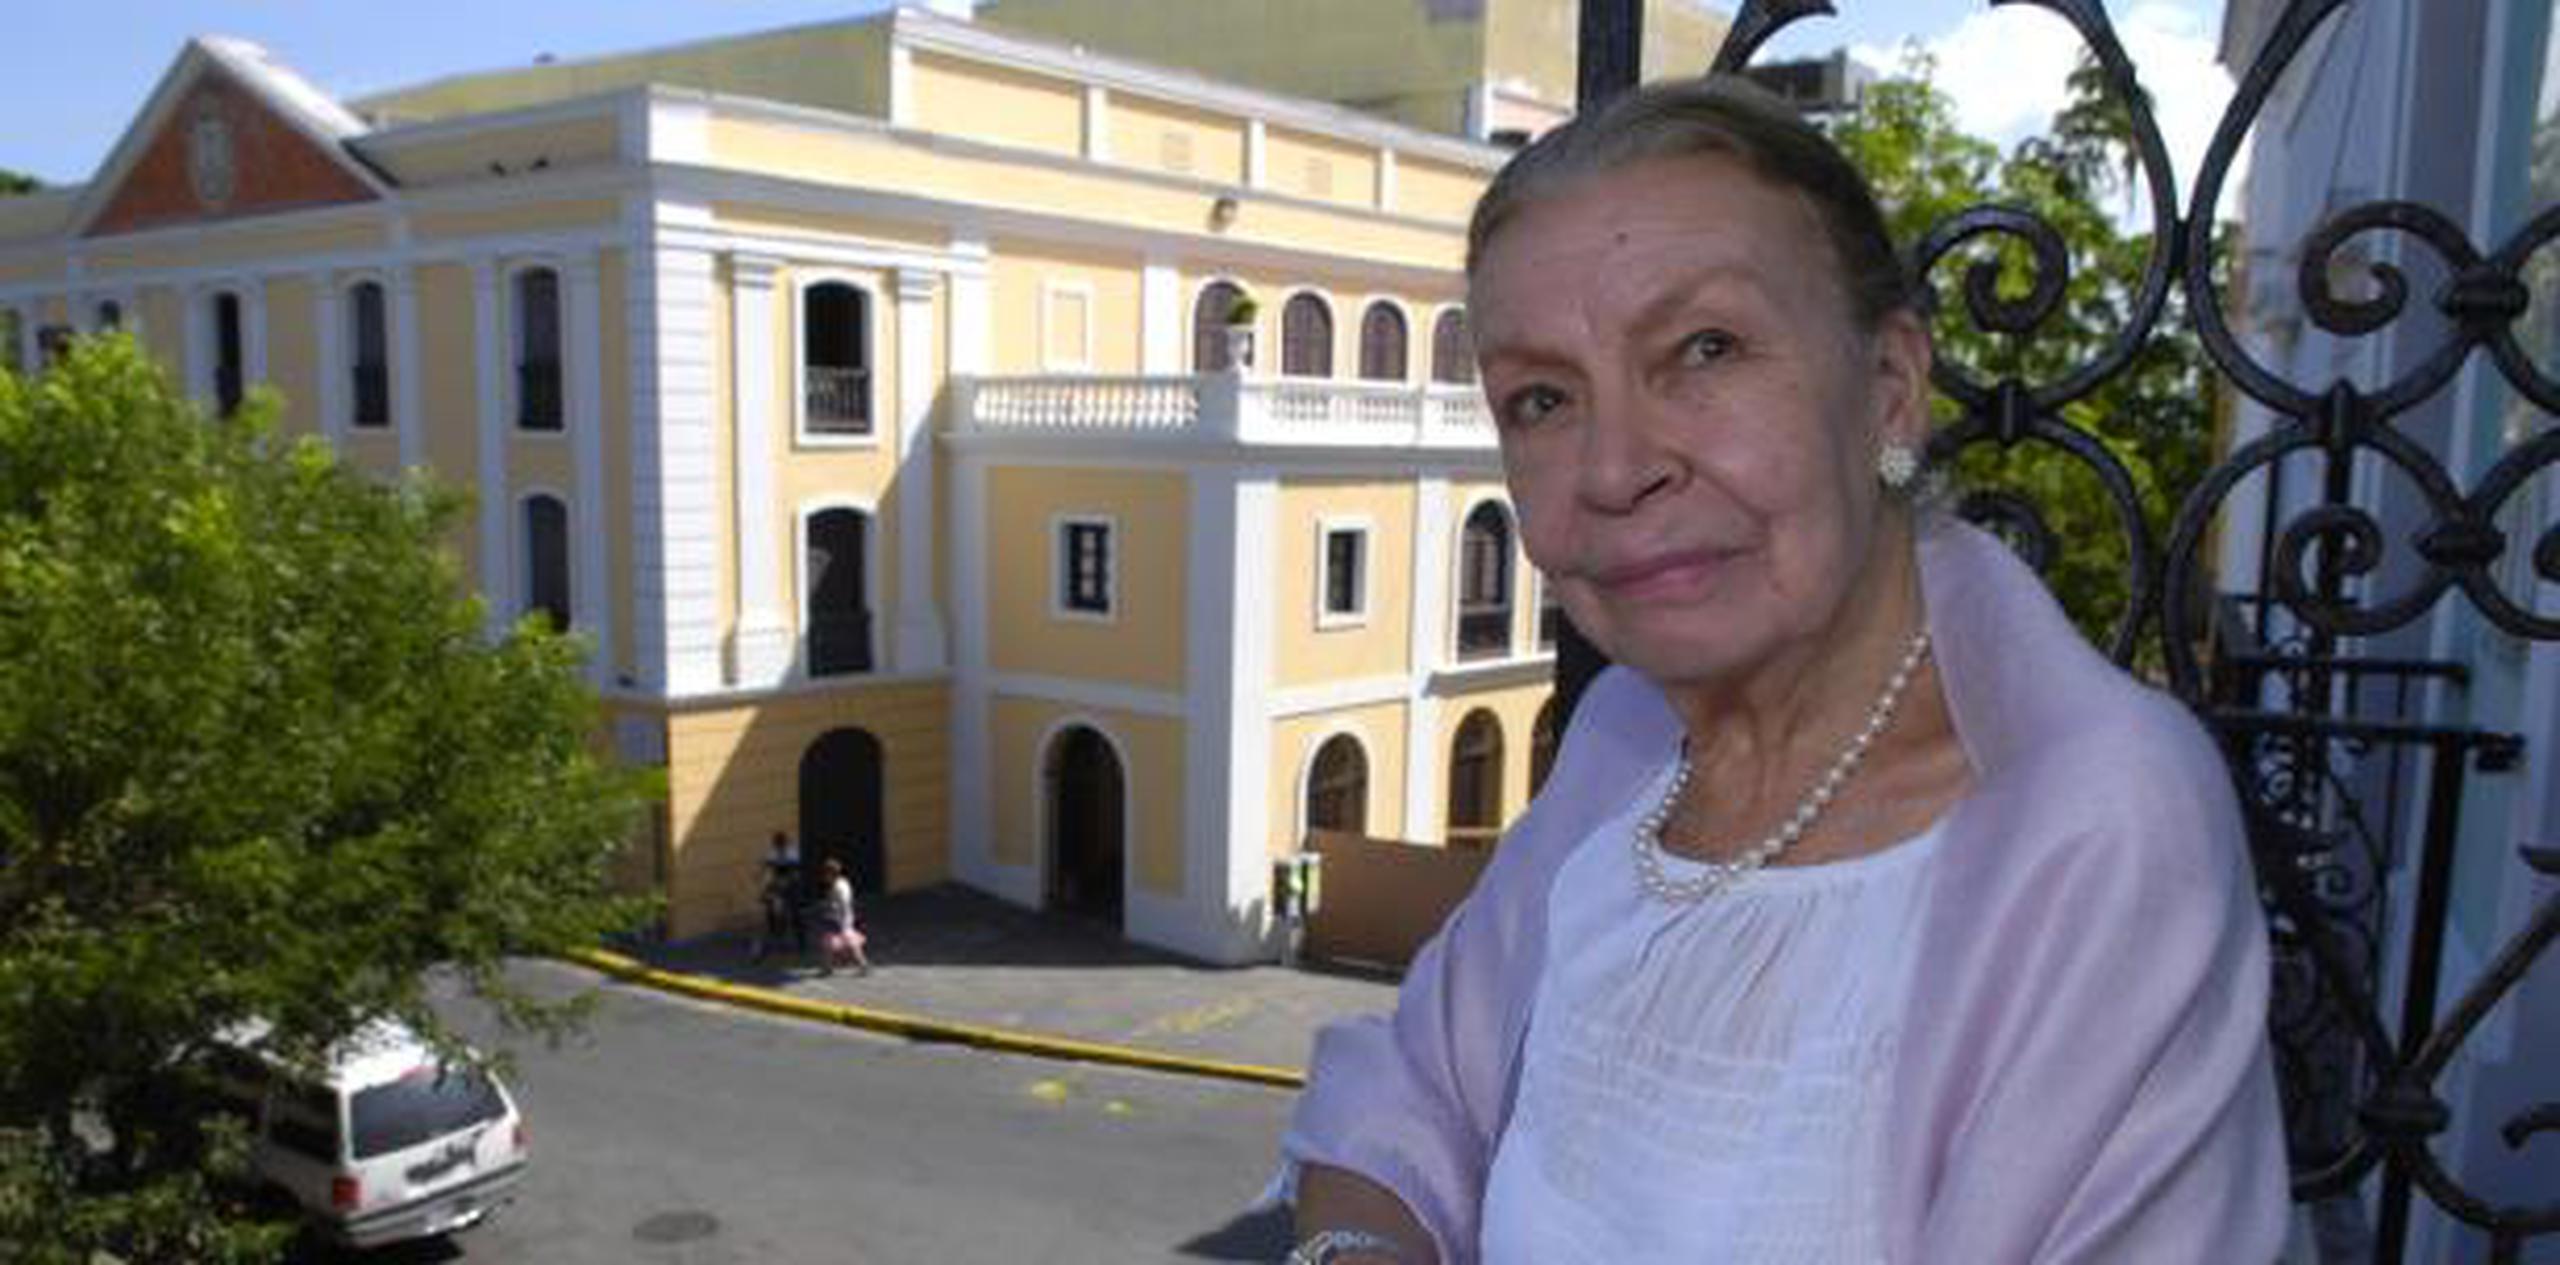 Martínez, de 92 años, se encuentra recluida en el Doctor’s Center Hospital en Santurce. (Archivo)